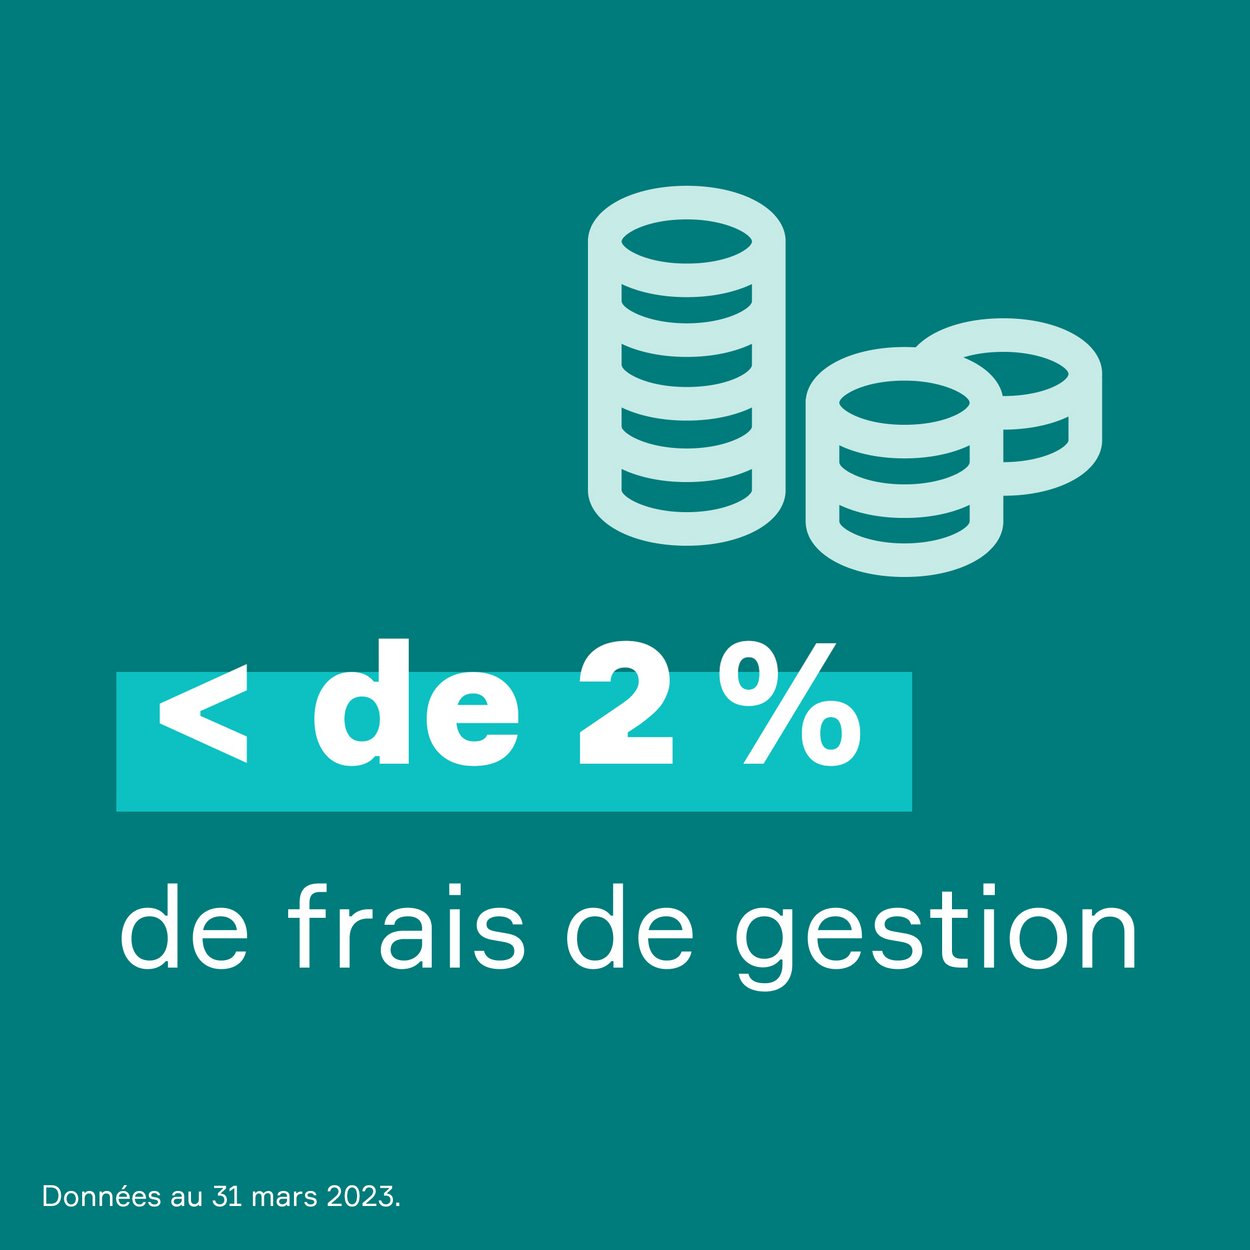 Bloc vert accueillant le texte "seulement 1,53% de frais de gestion". Mise en exergue du chiffre 1,53%.